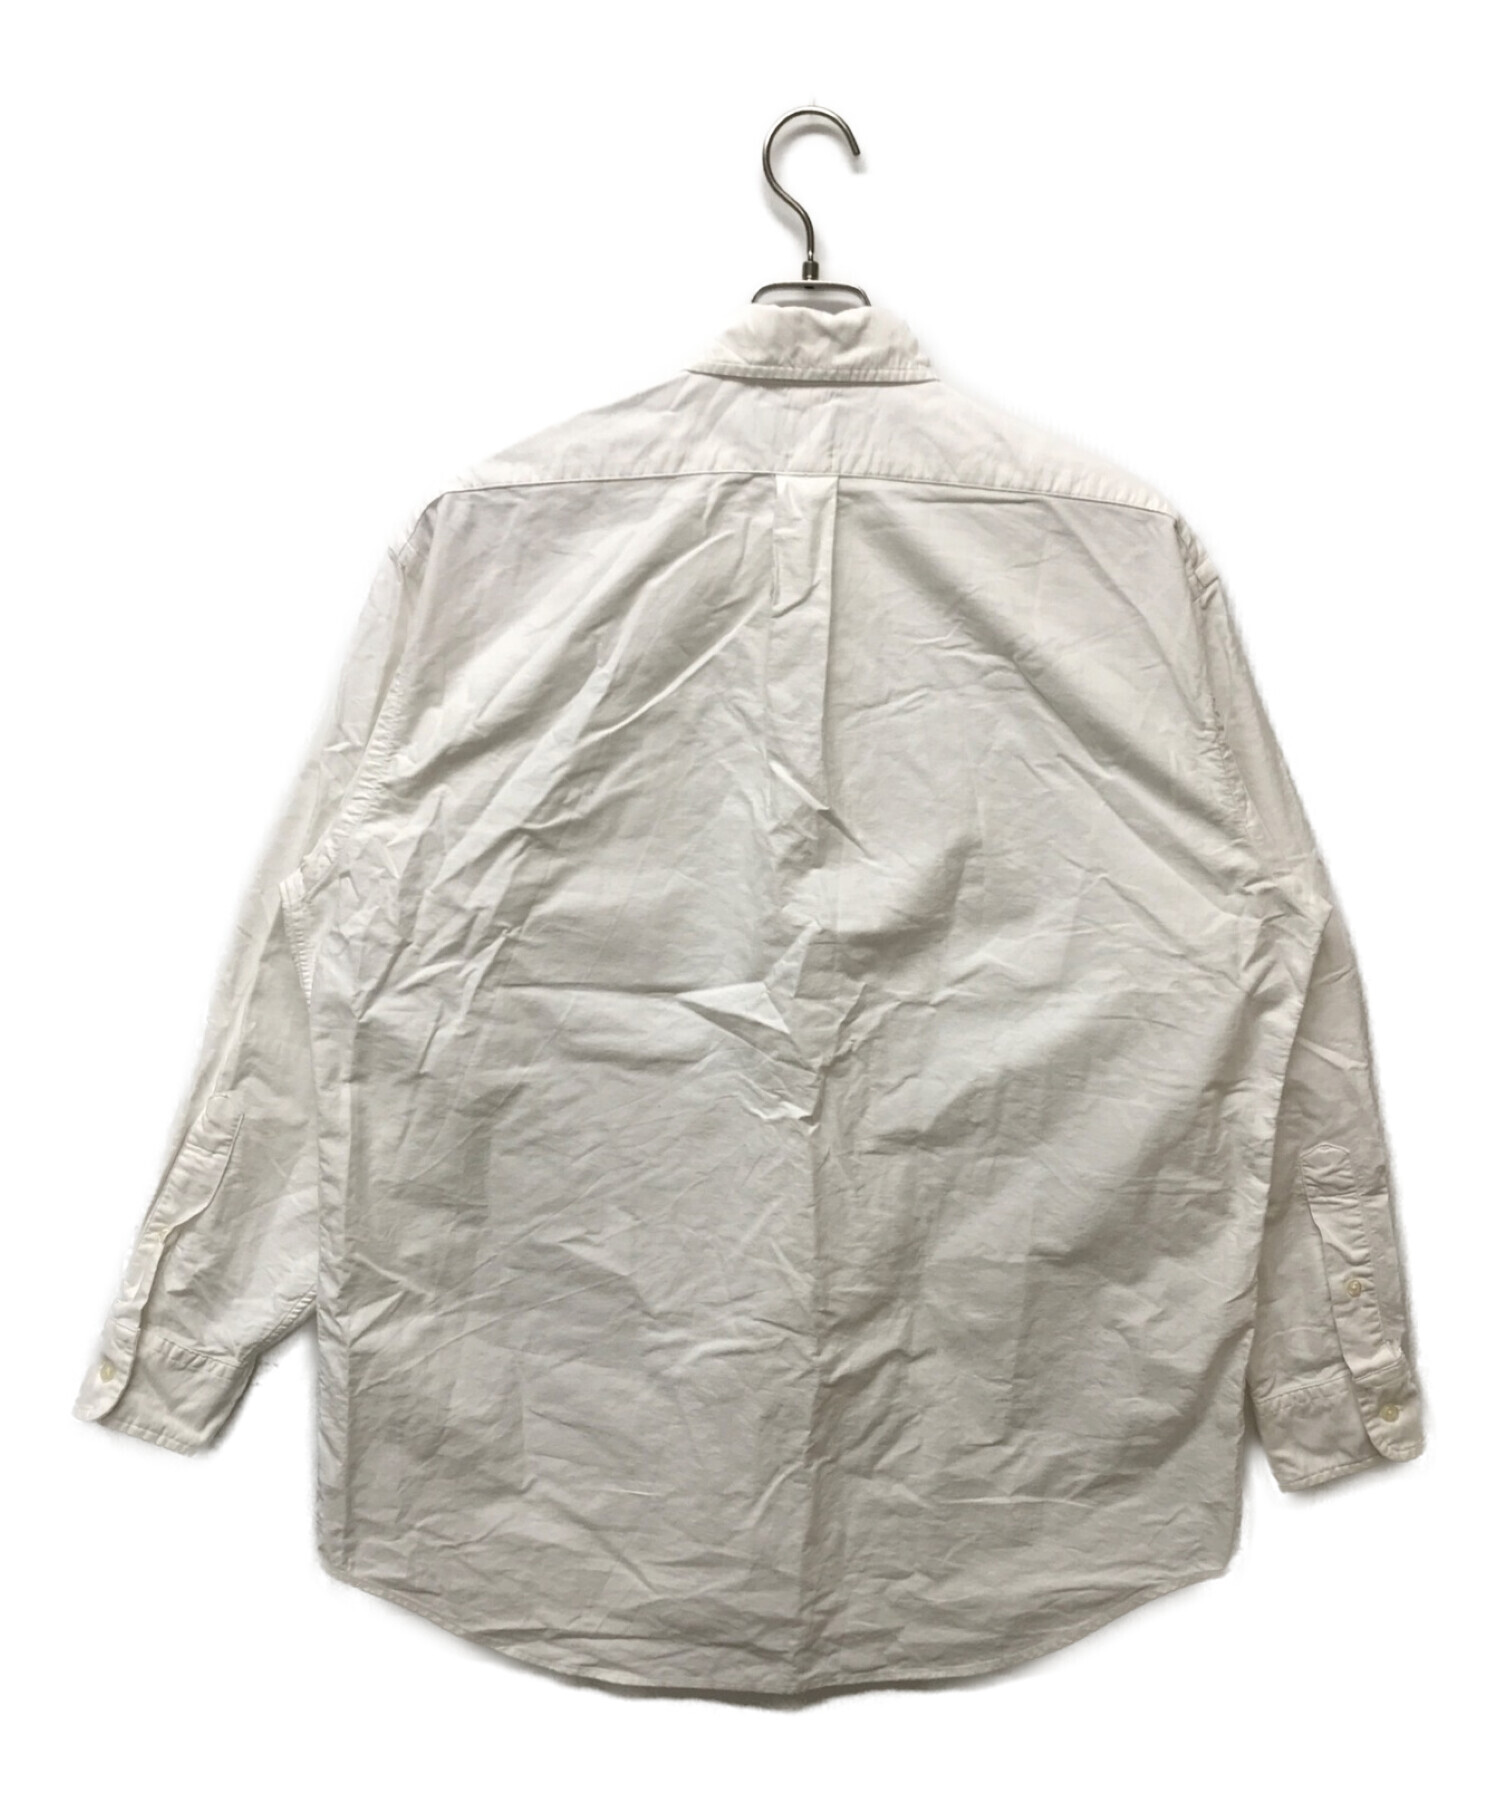 RALPH LAUREN (ラルフローレン) 裾ポニー刺繍オーバーサイズボタンダウンシャツ ホワイト サイズ:S